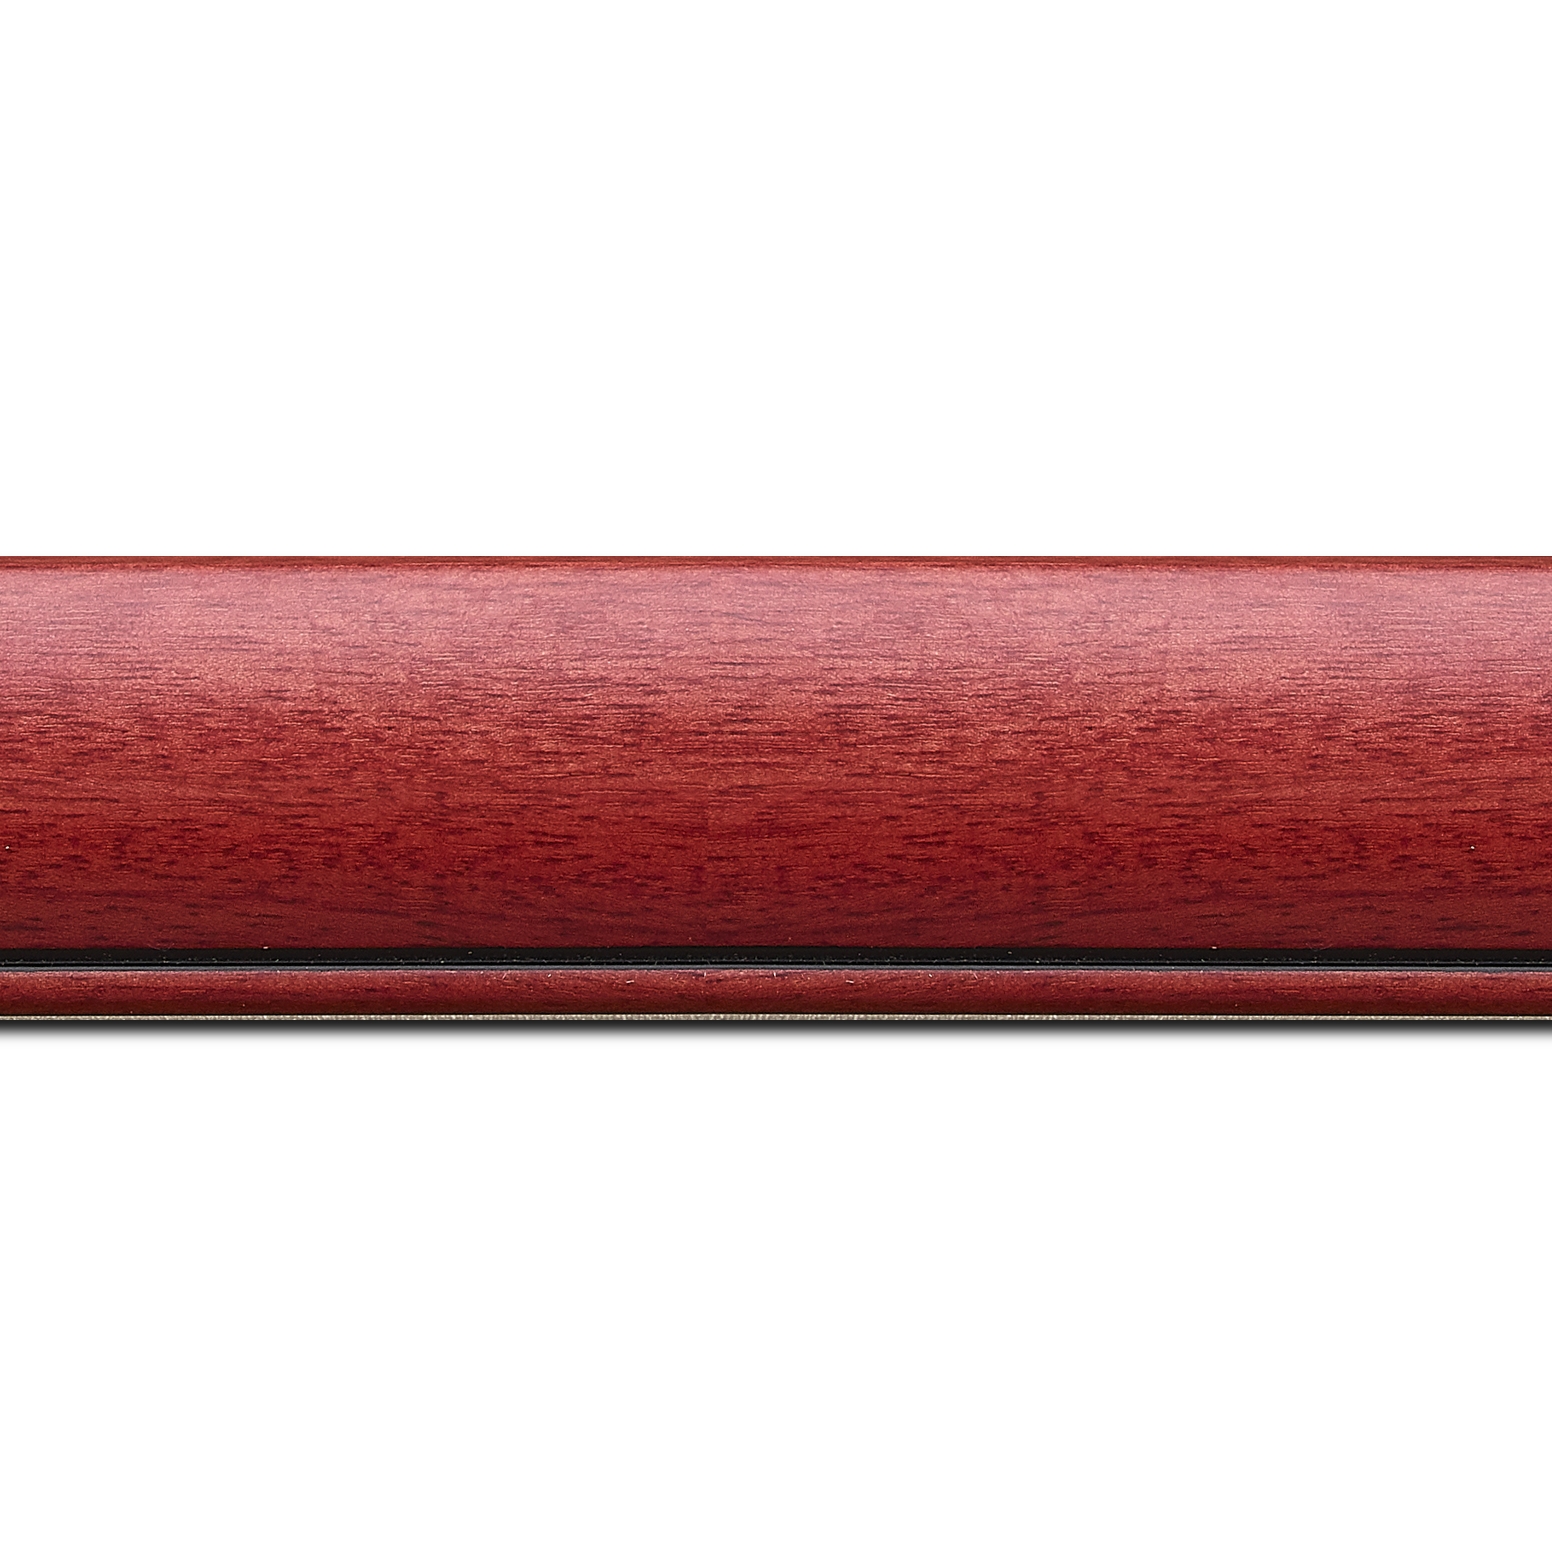 Pack par 12m, bois profil arrondi largeur 4.7cm couleur rouge cerise satiné rehaussé d'un filet noir(longueur baguette pouvant varier entre 2.40m et 3m selon arrivage des bois)